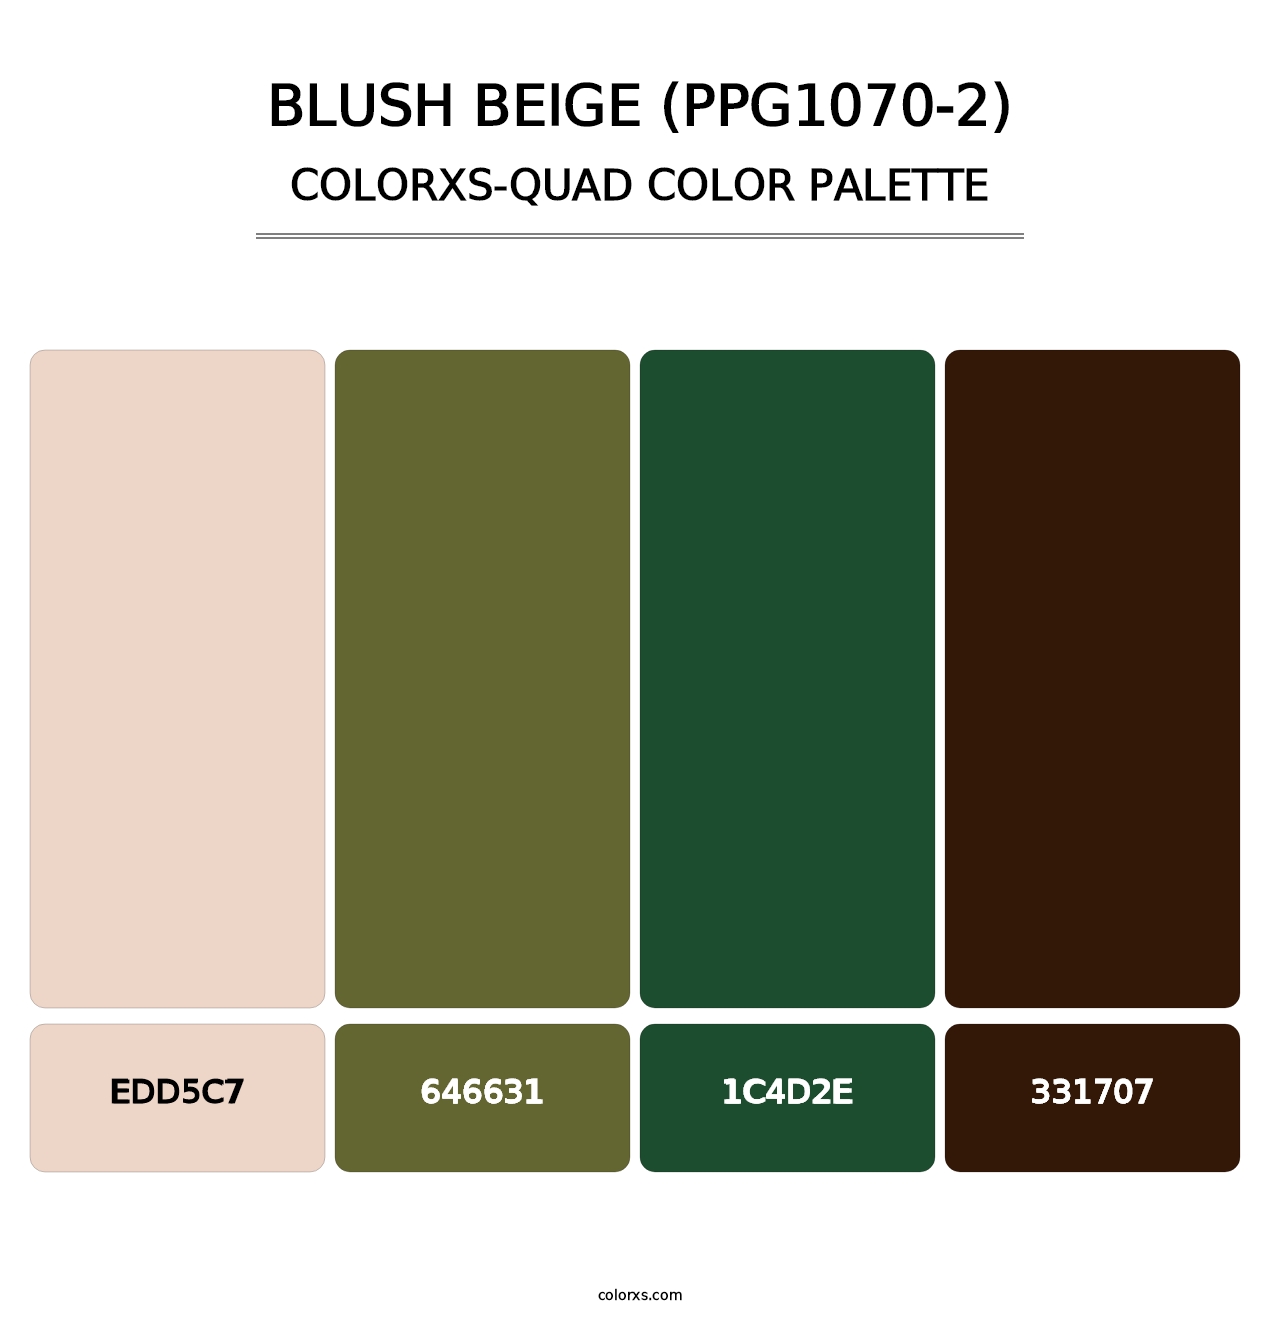 Blush Beige (PPG1070-2) - Colorxs Quad Palette